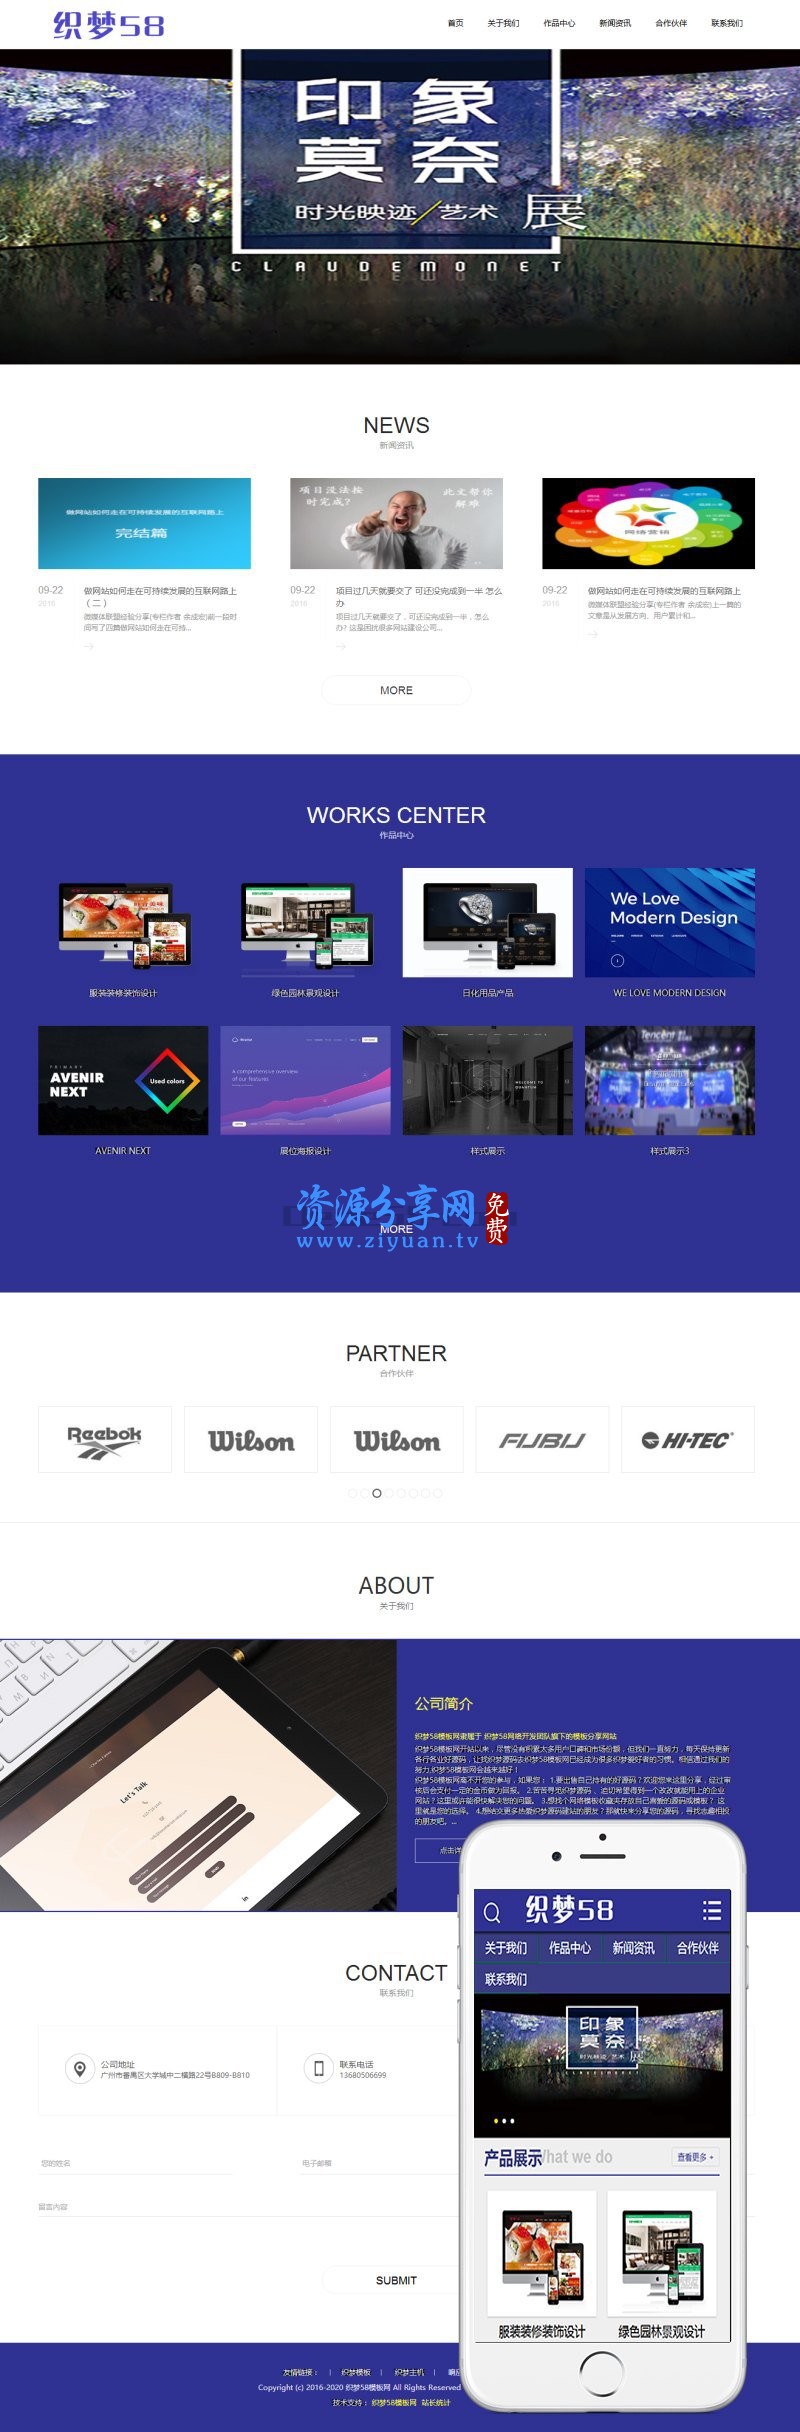 织梦 dedecms 高端视觉创意展位设计网站模板